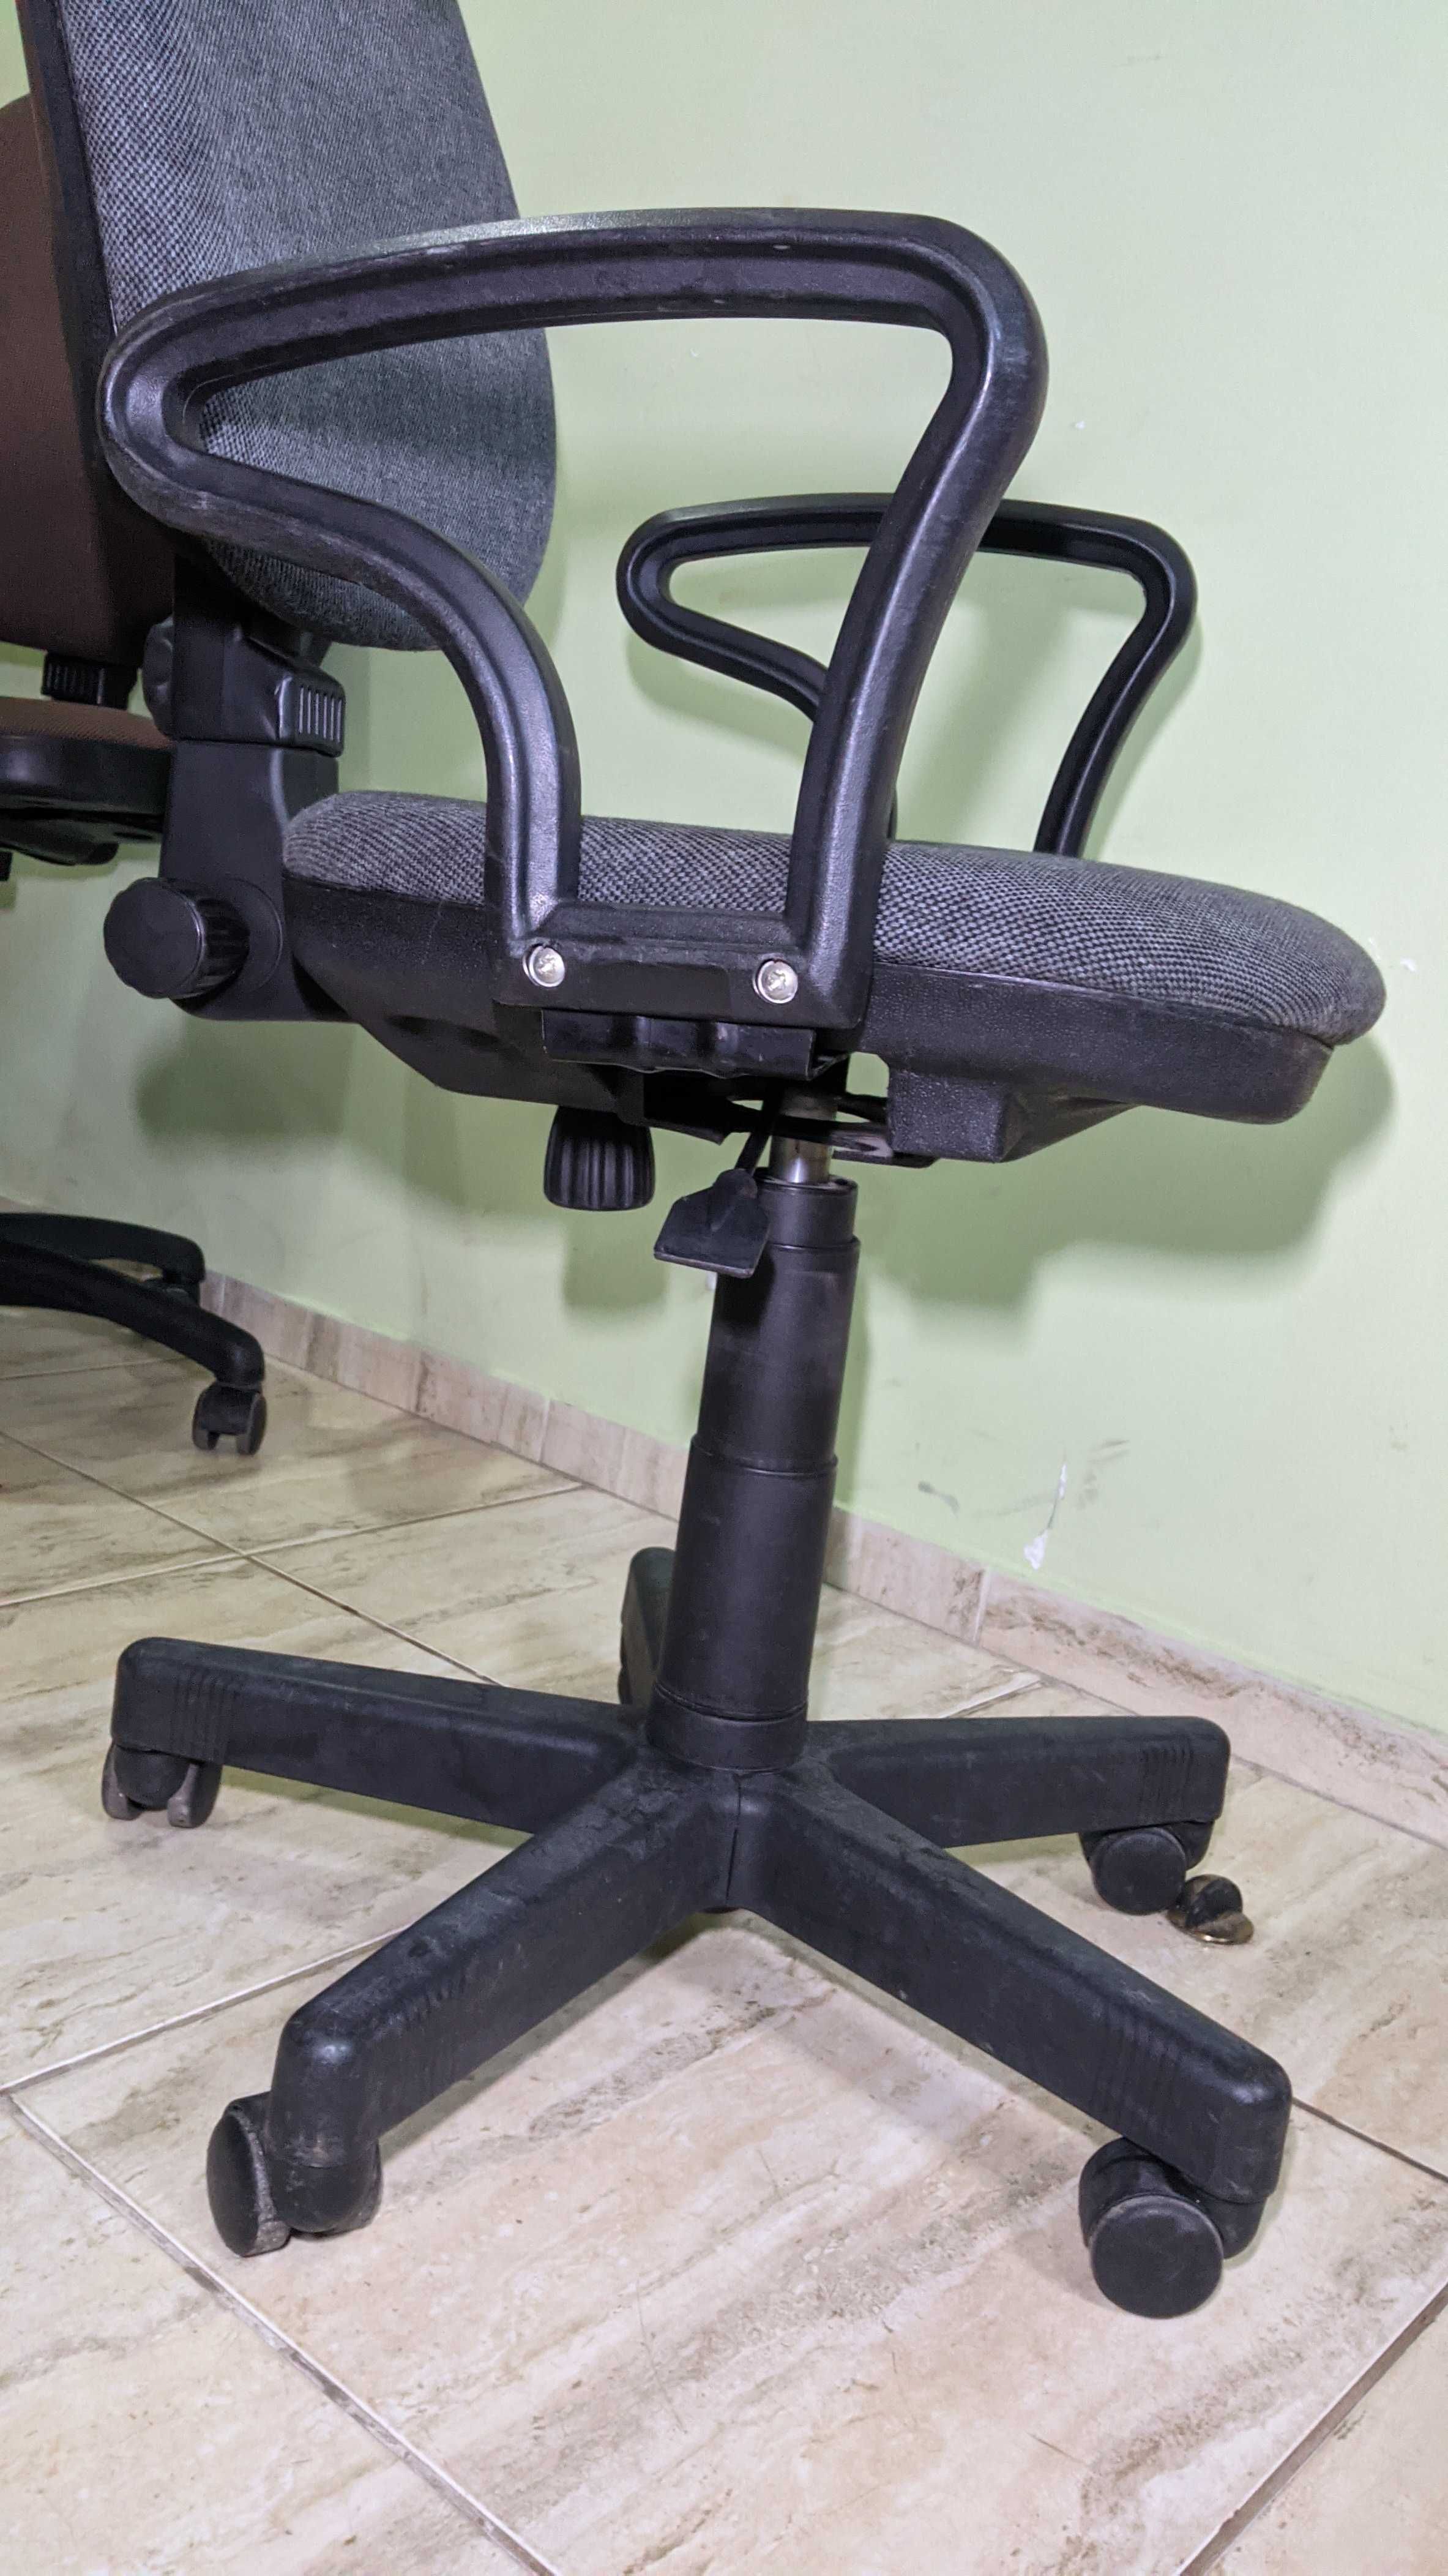 Krzesło - krzesła / fotele biurowe / obrotowe - 60 zł za sztukę